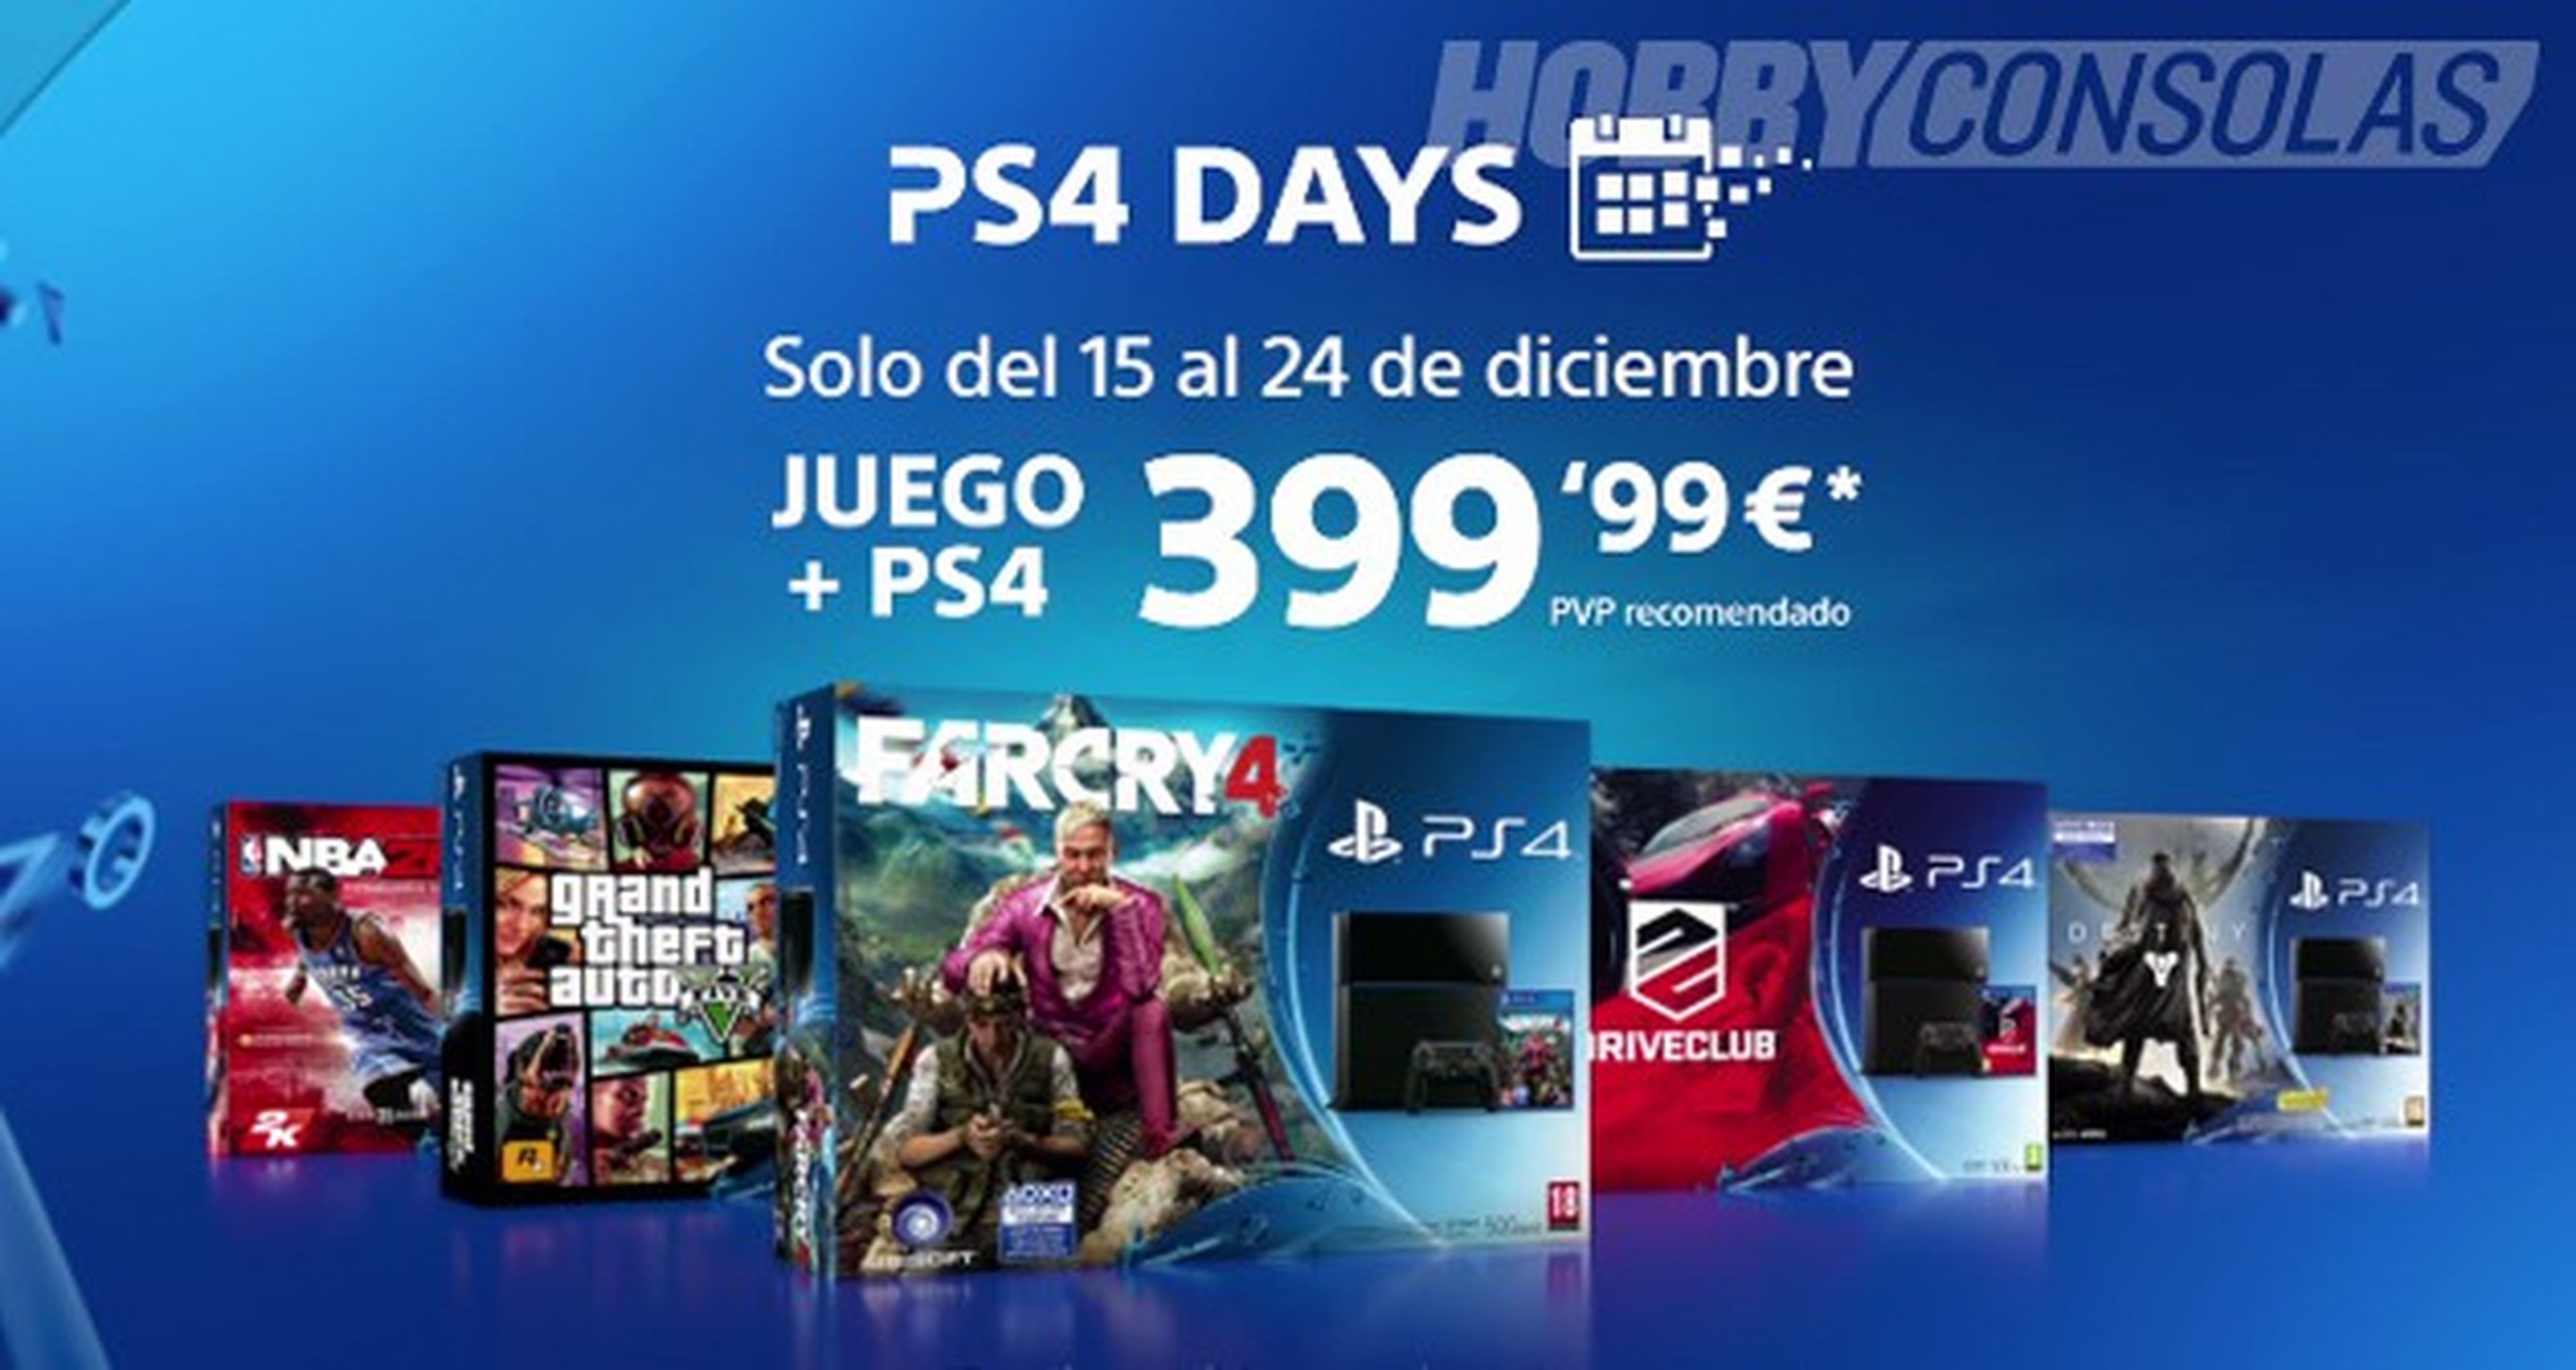 PlayStation 4 con un juego por 399,99€ en los PS4 Days